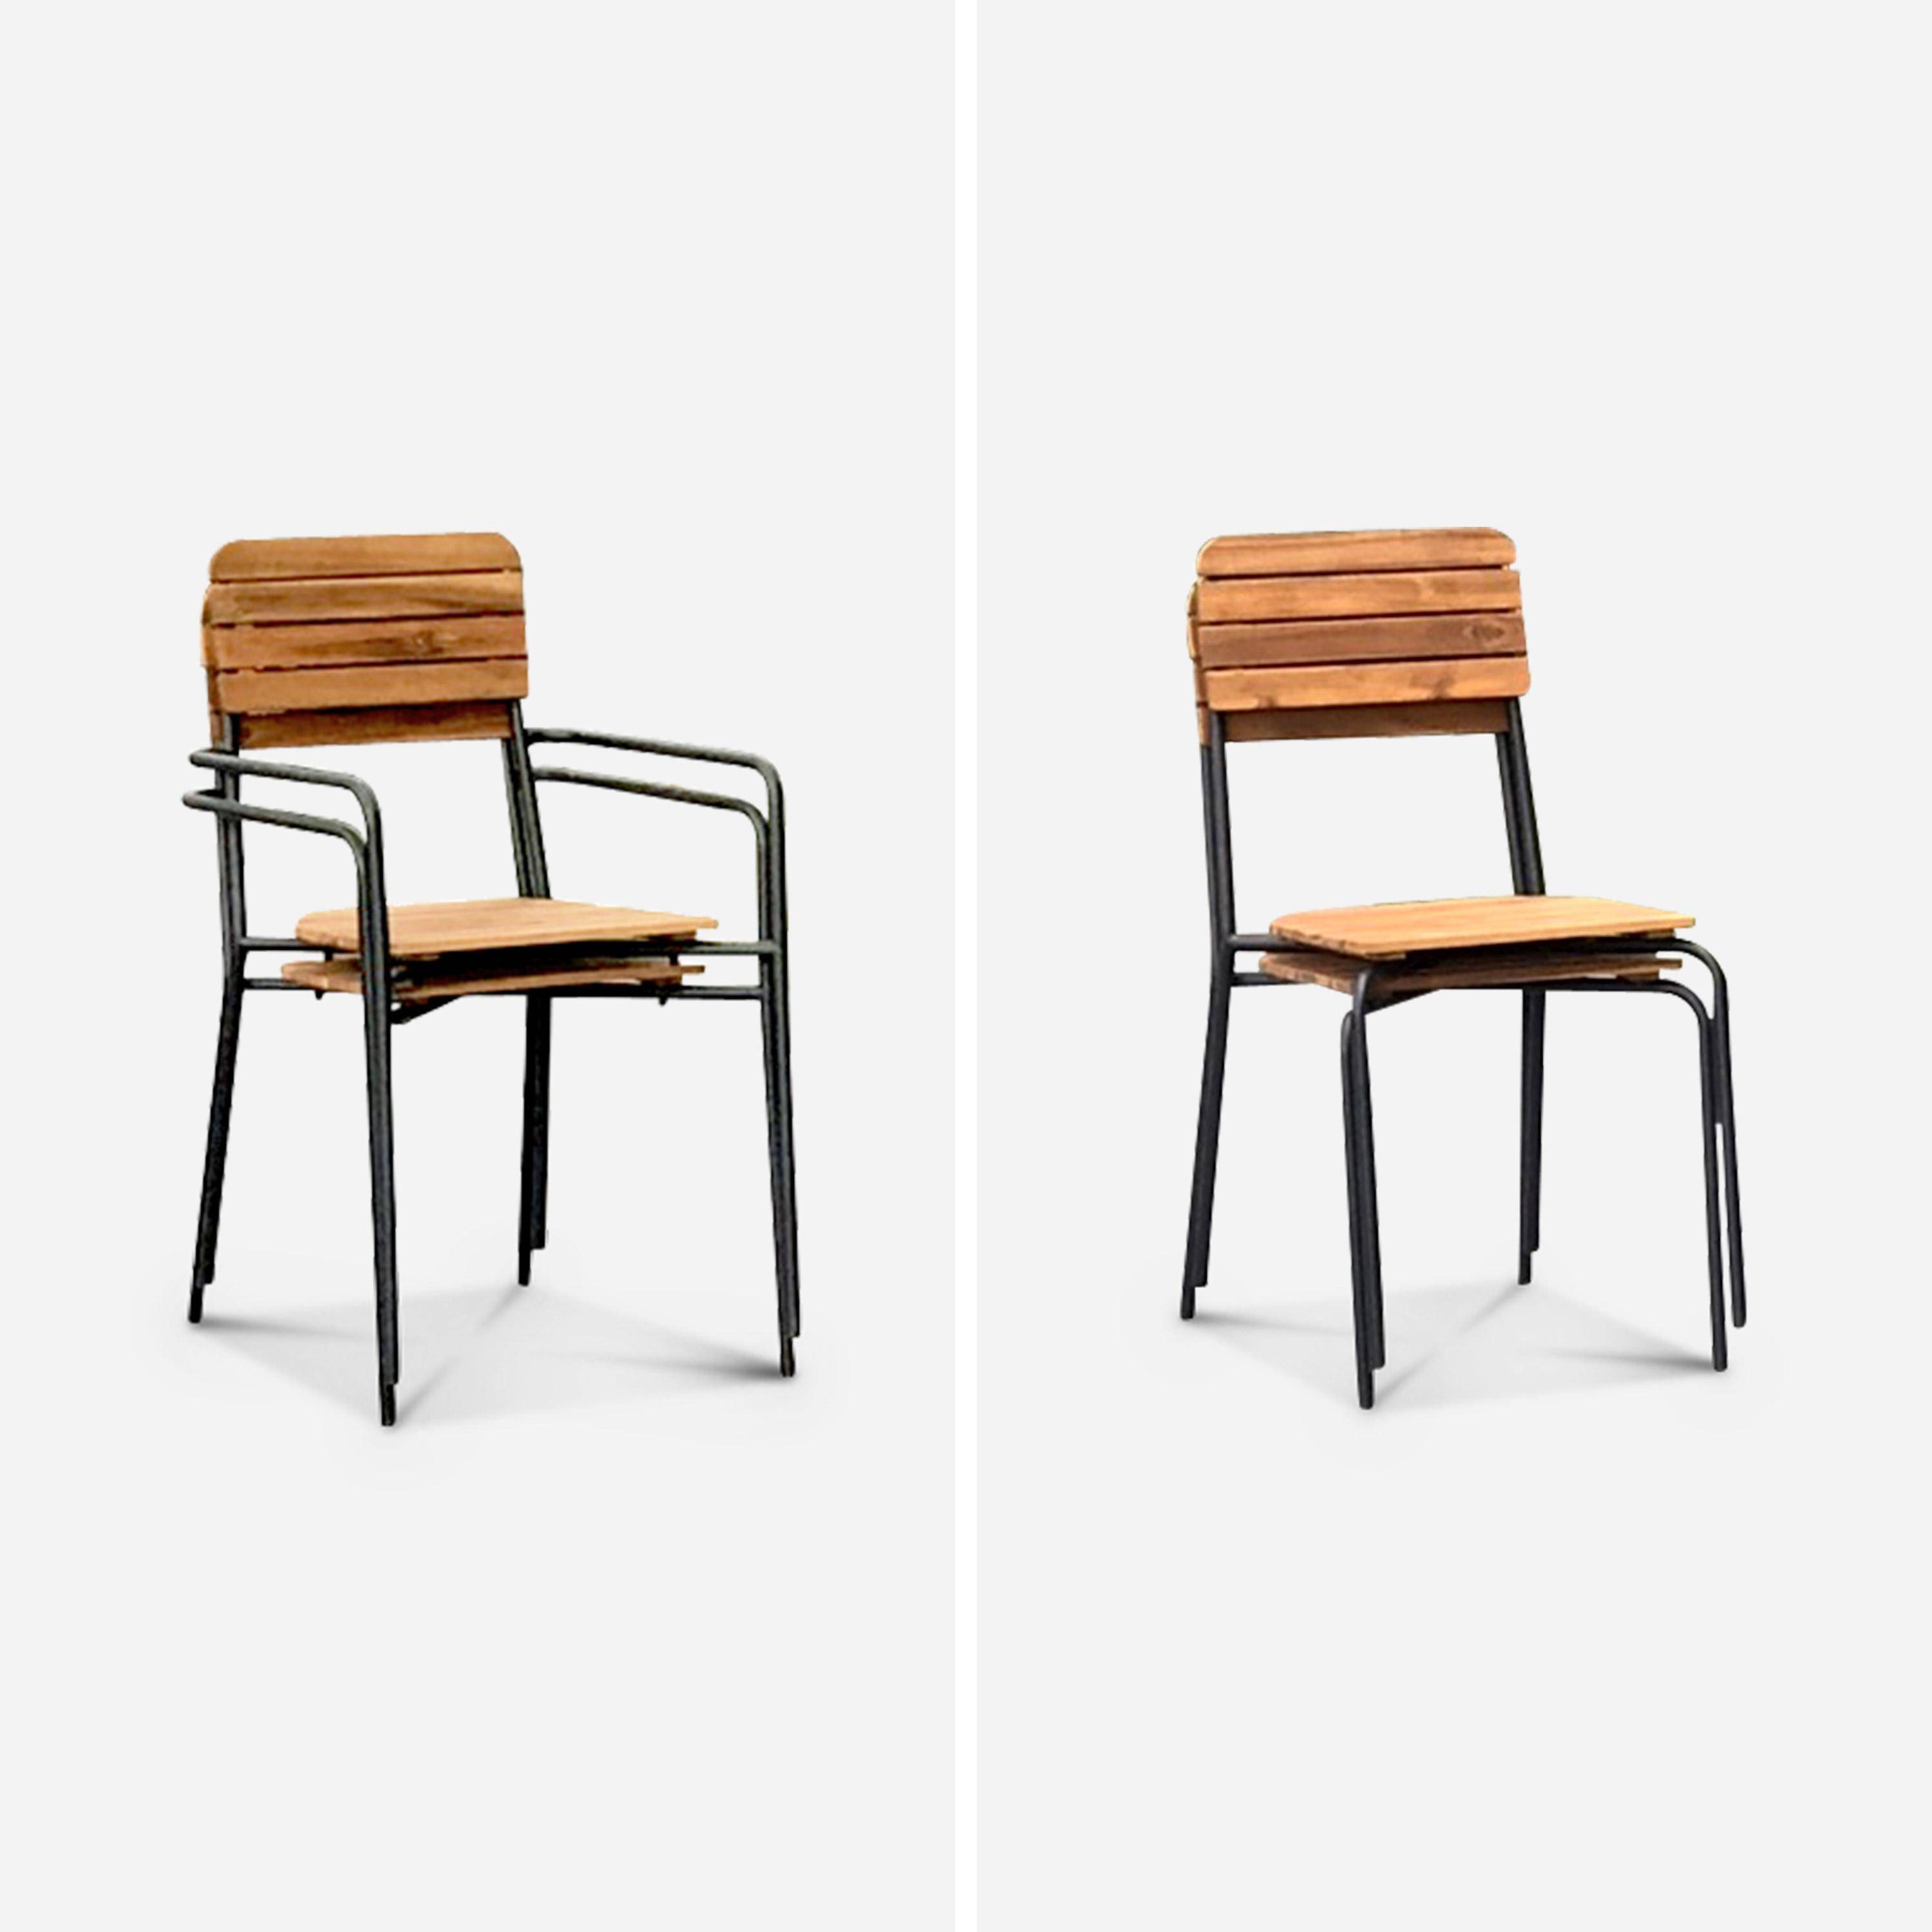 Gartenmöbel-Set aus Holz und Metall 180x90cm - Lima - Rechteckiger Tisch aus Akazie und Metall mit 4 Stühlen und 2 stapelbaren Sesseln Photo8